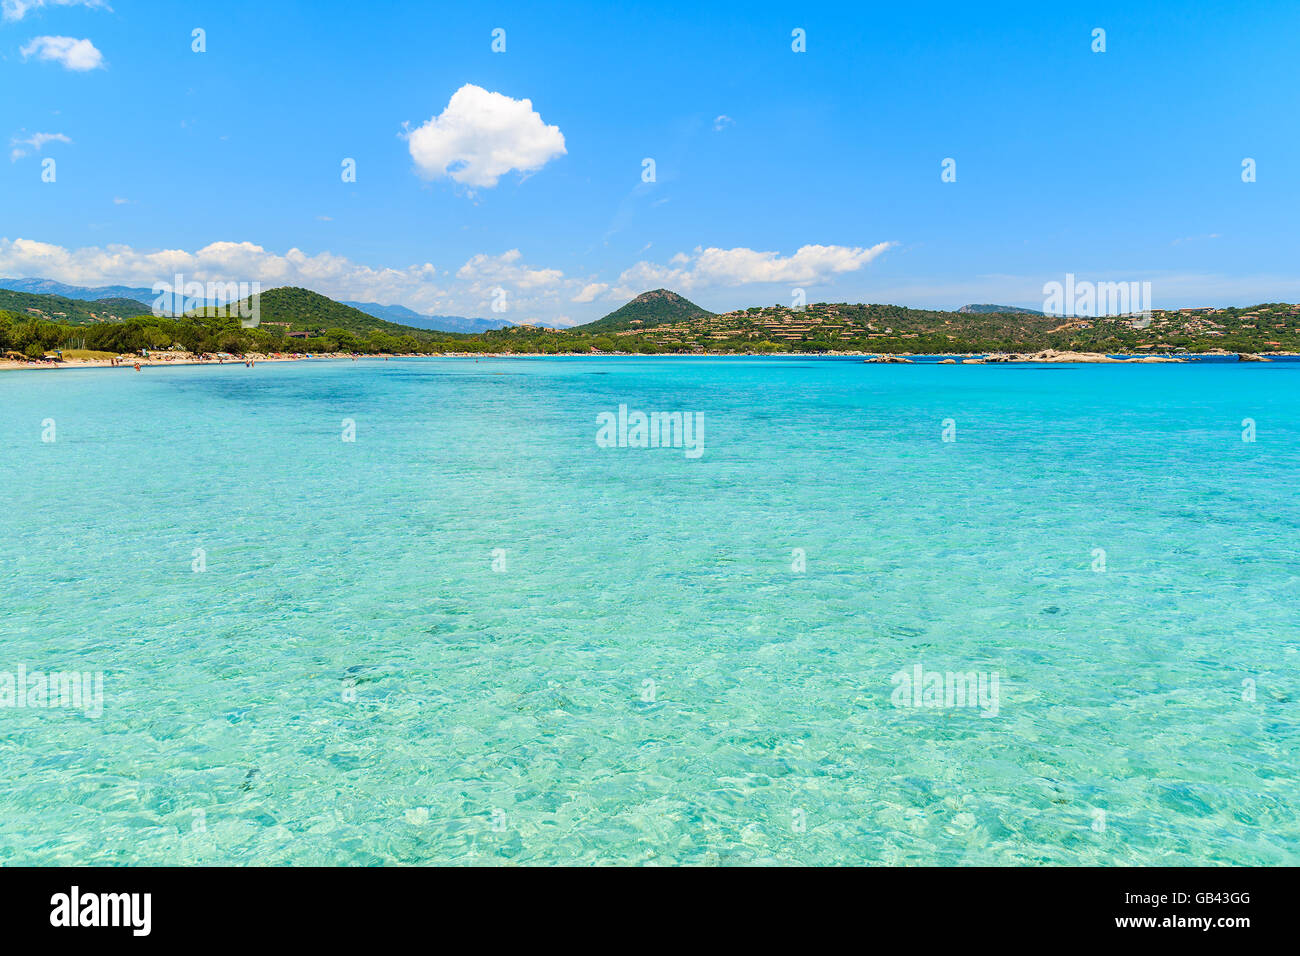 L'eau de mer turquoise de la baie de Santa giulia, Corse, France Banque D'Images